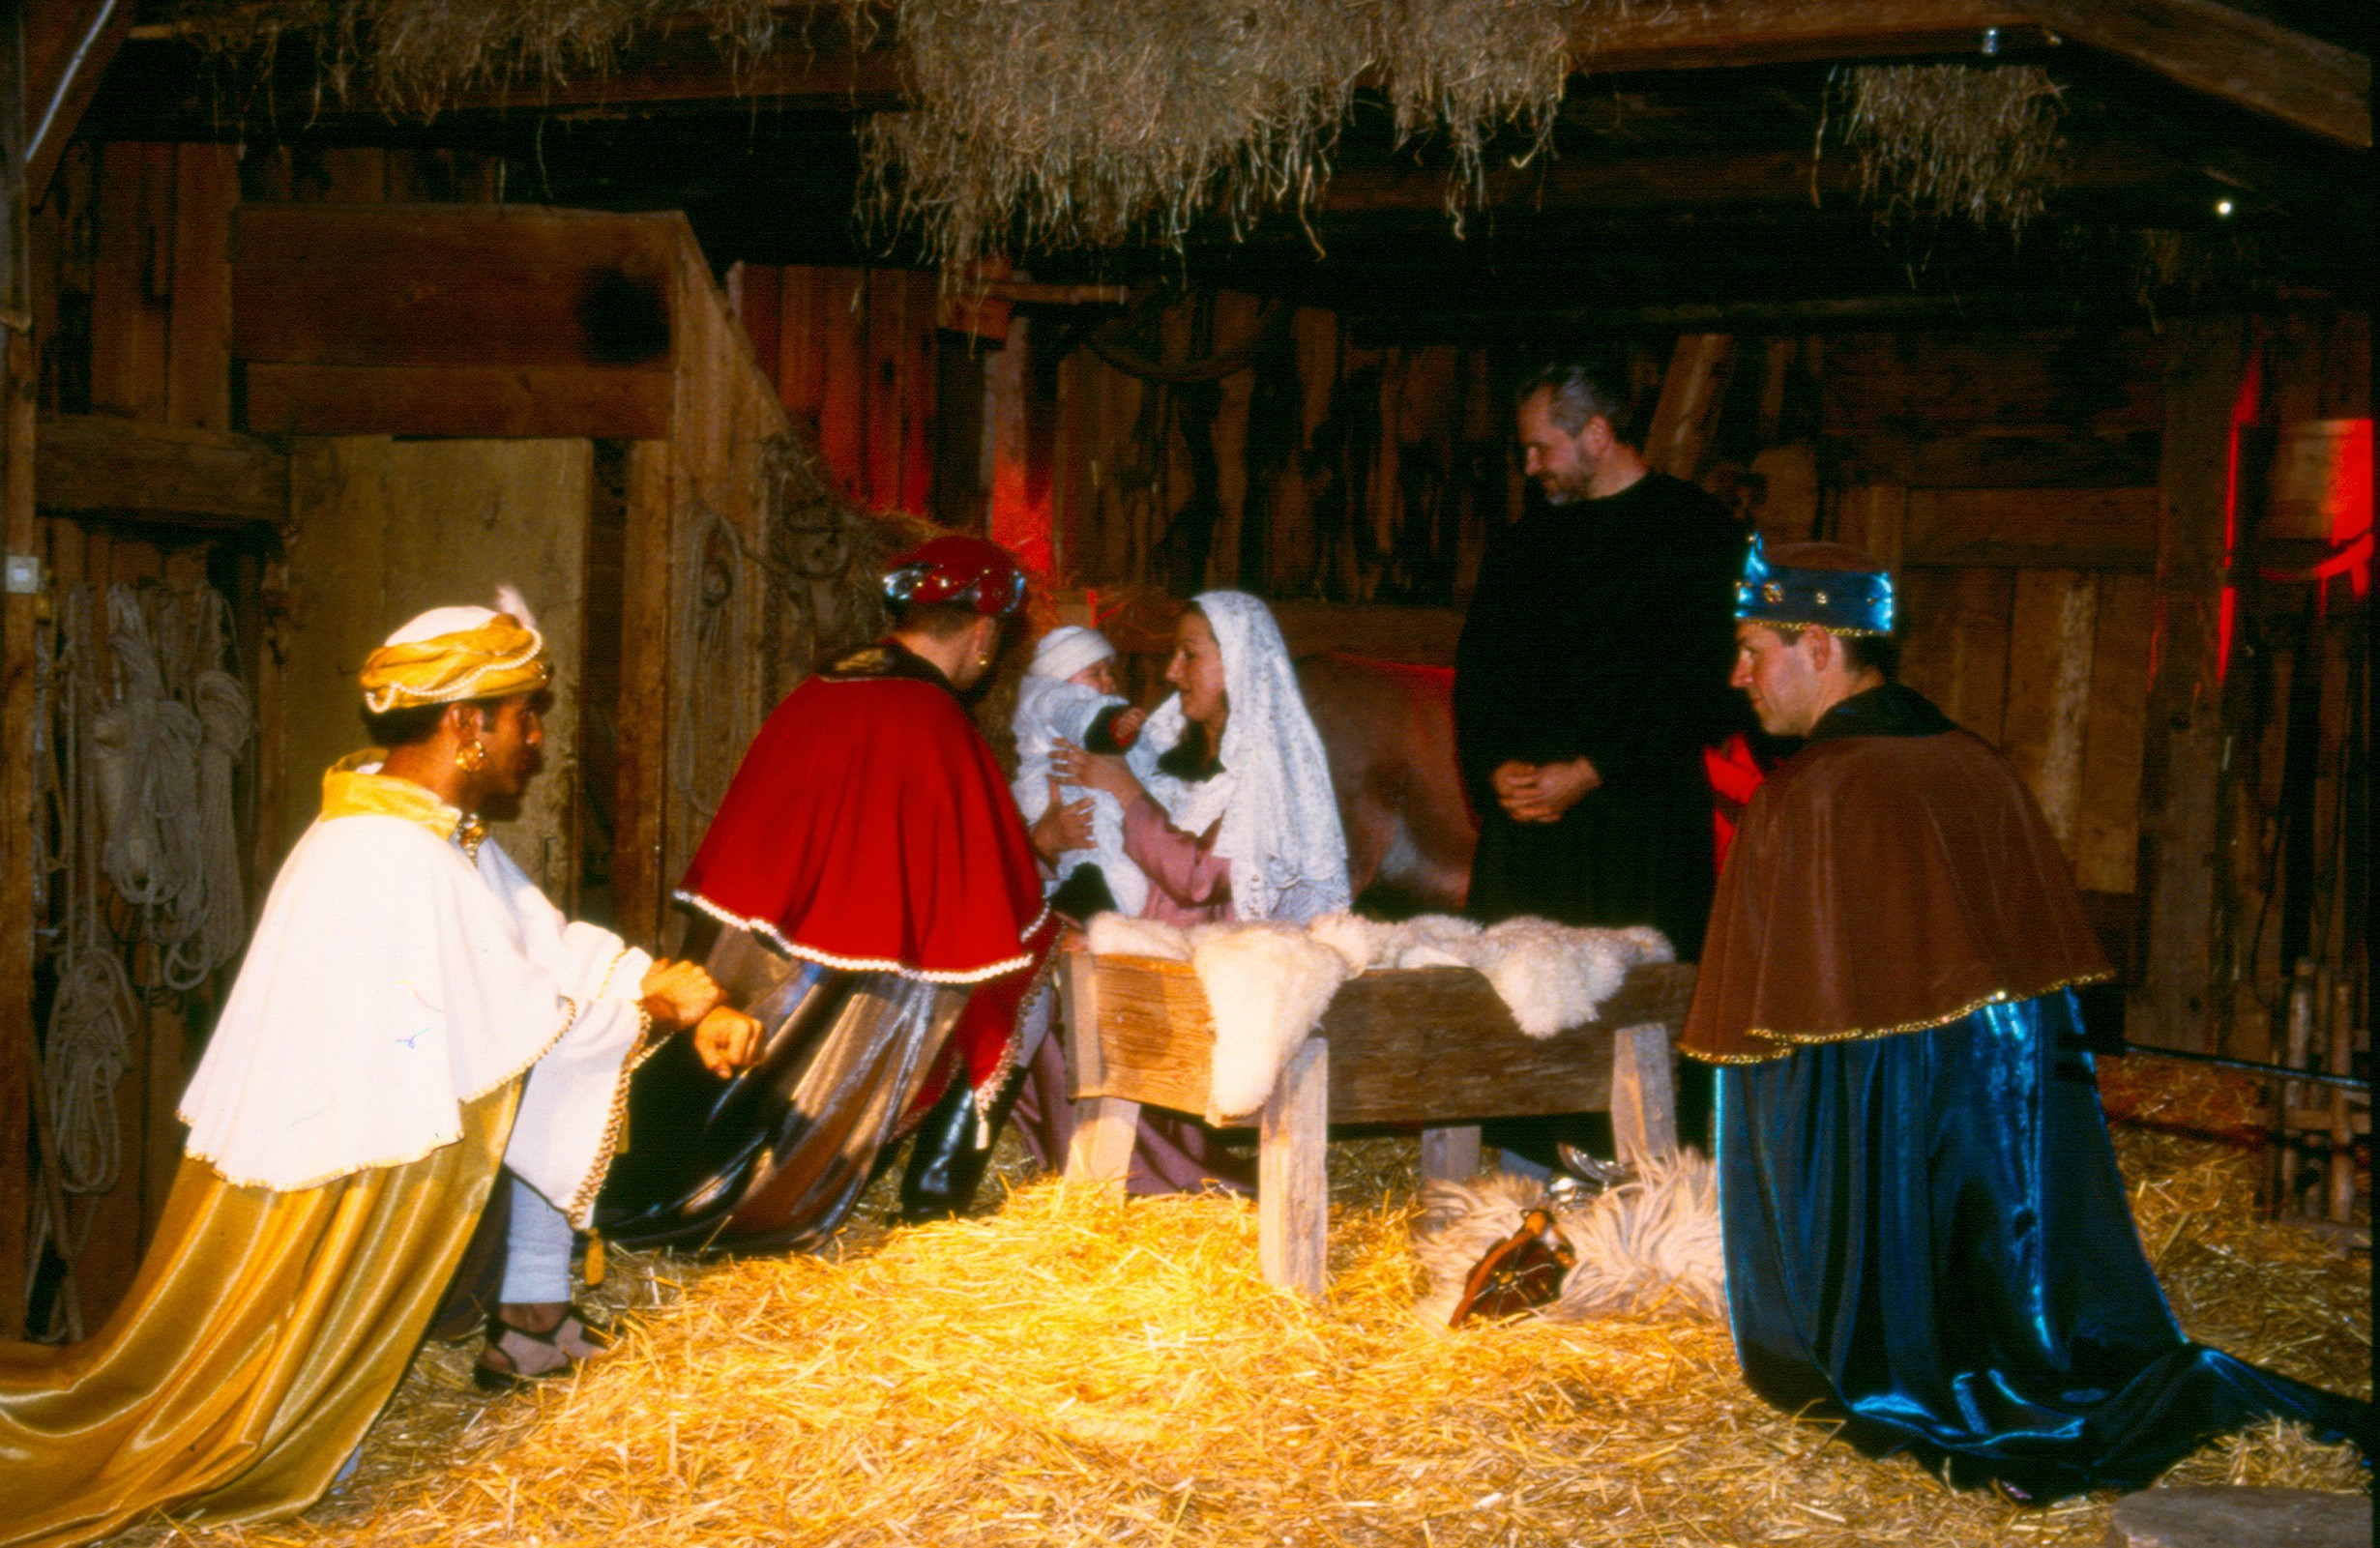 Ook de ‘Stallweihnacht’ is een trekpleister voor menige bezoeker. Deze ‘Stallweihnacht’ is een kerstspel in een oude stal met echte dieren en hemelse muziek.